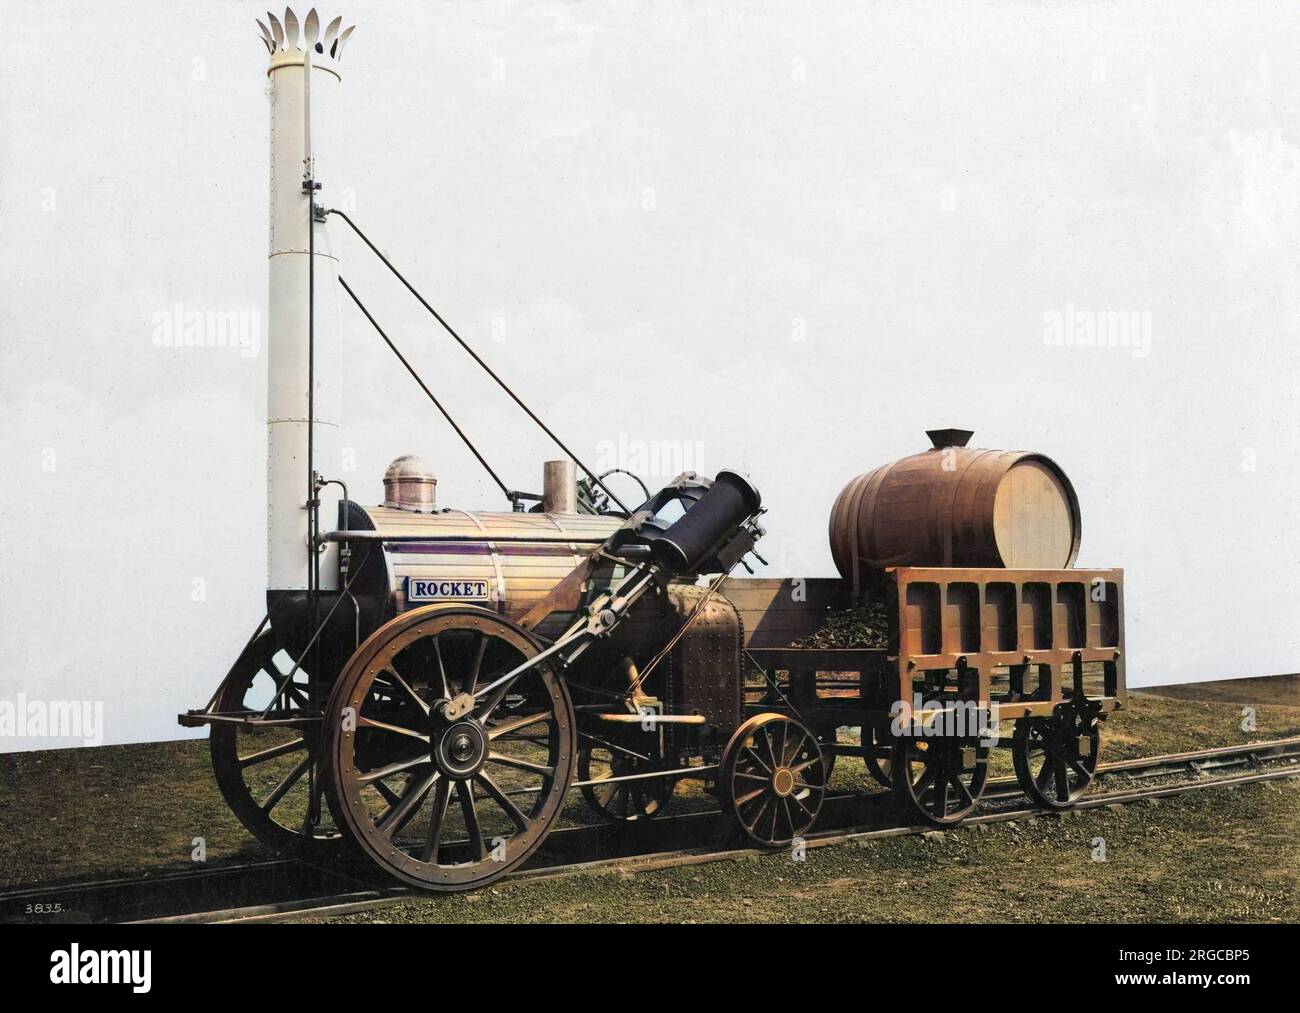 La fusée de George Stephenson - la réplique pré-1923. La locomotive Rocket Locomotive de George Stephenson a été construite en 1829. Construit pour les essais Rainhill organisés par le Liverpool & Manchester Railway. La plus ancienne réplique grandeur nature de Rocket est celle que l'on voit sur cette photo. Banque D'Images